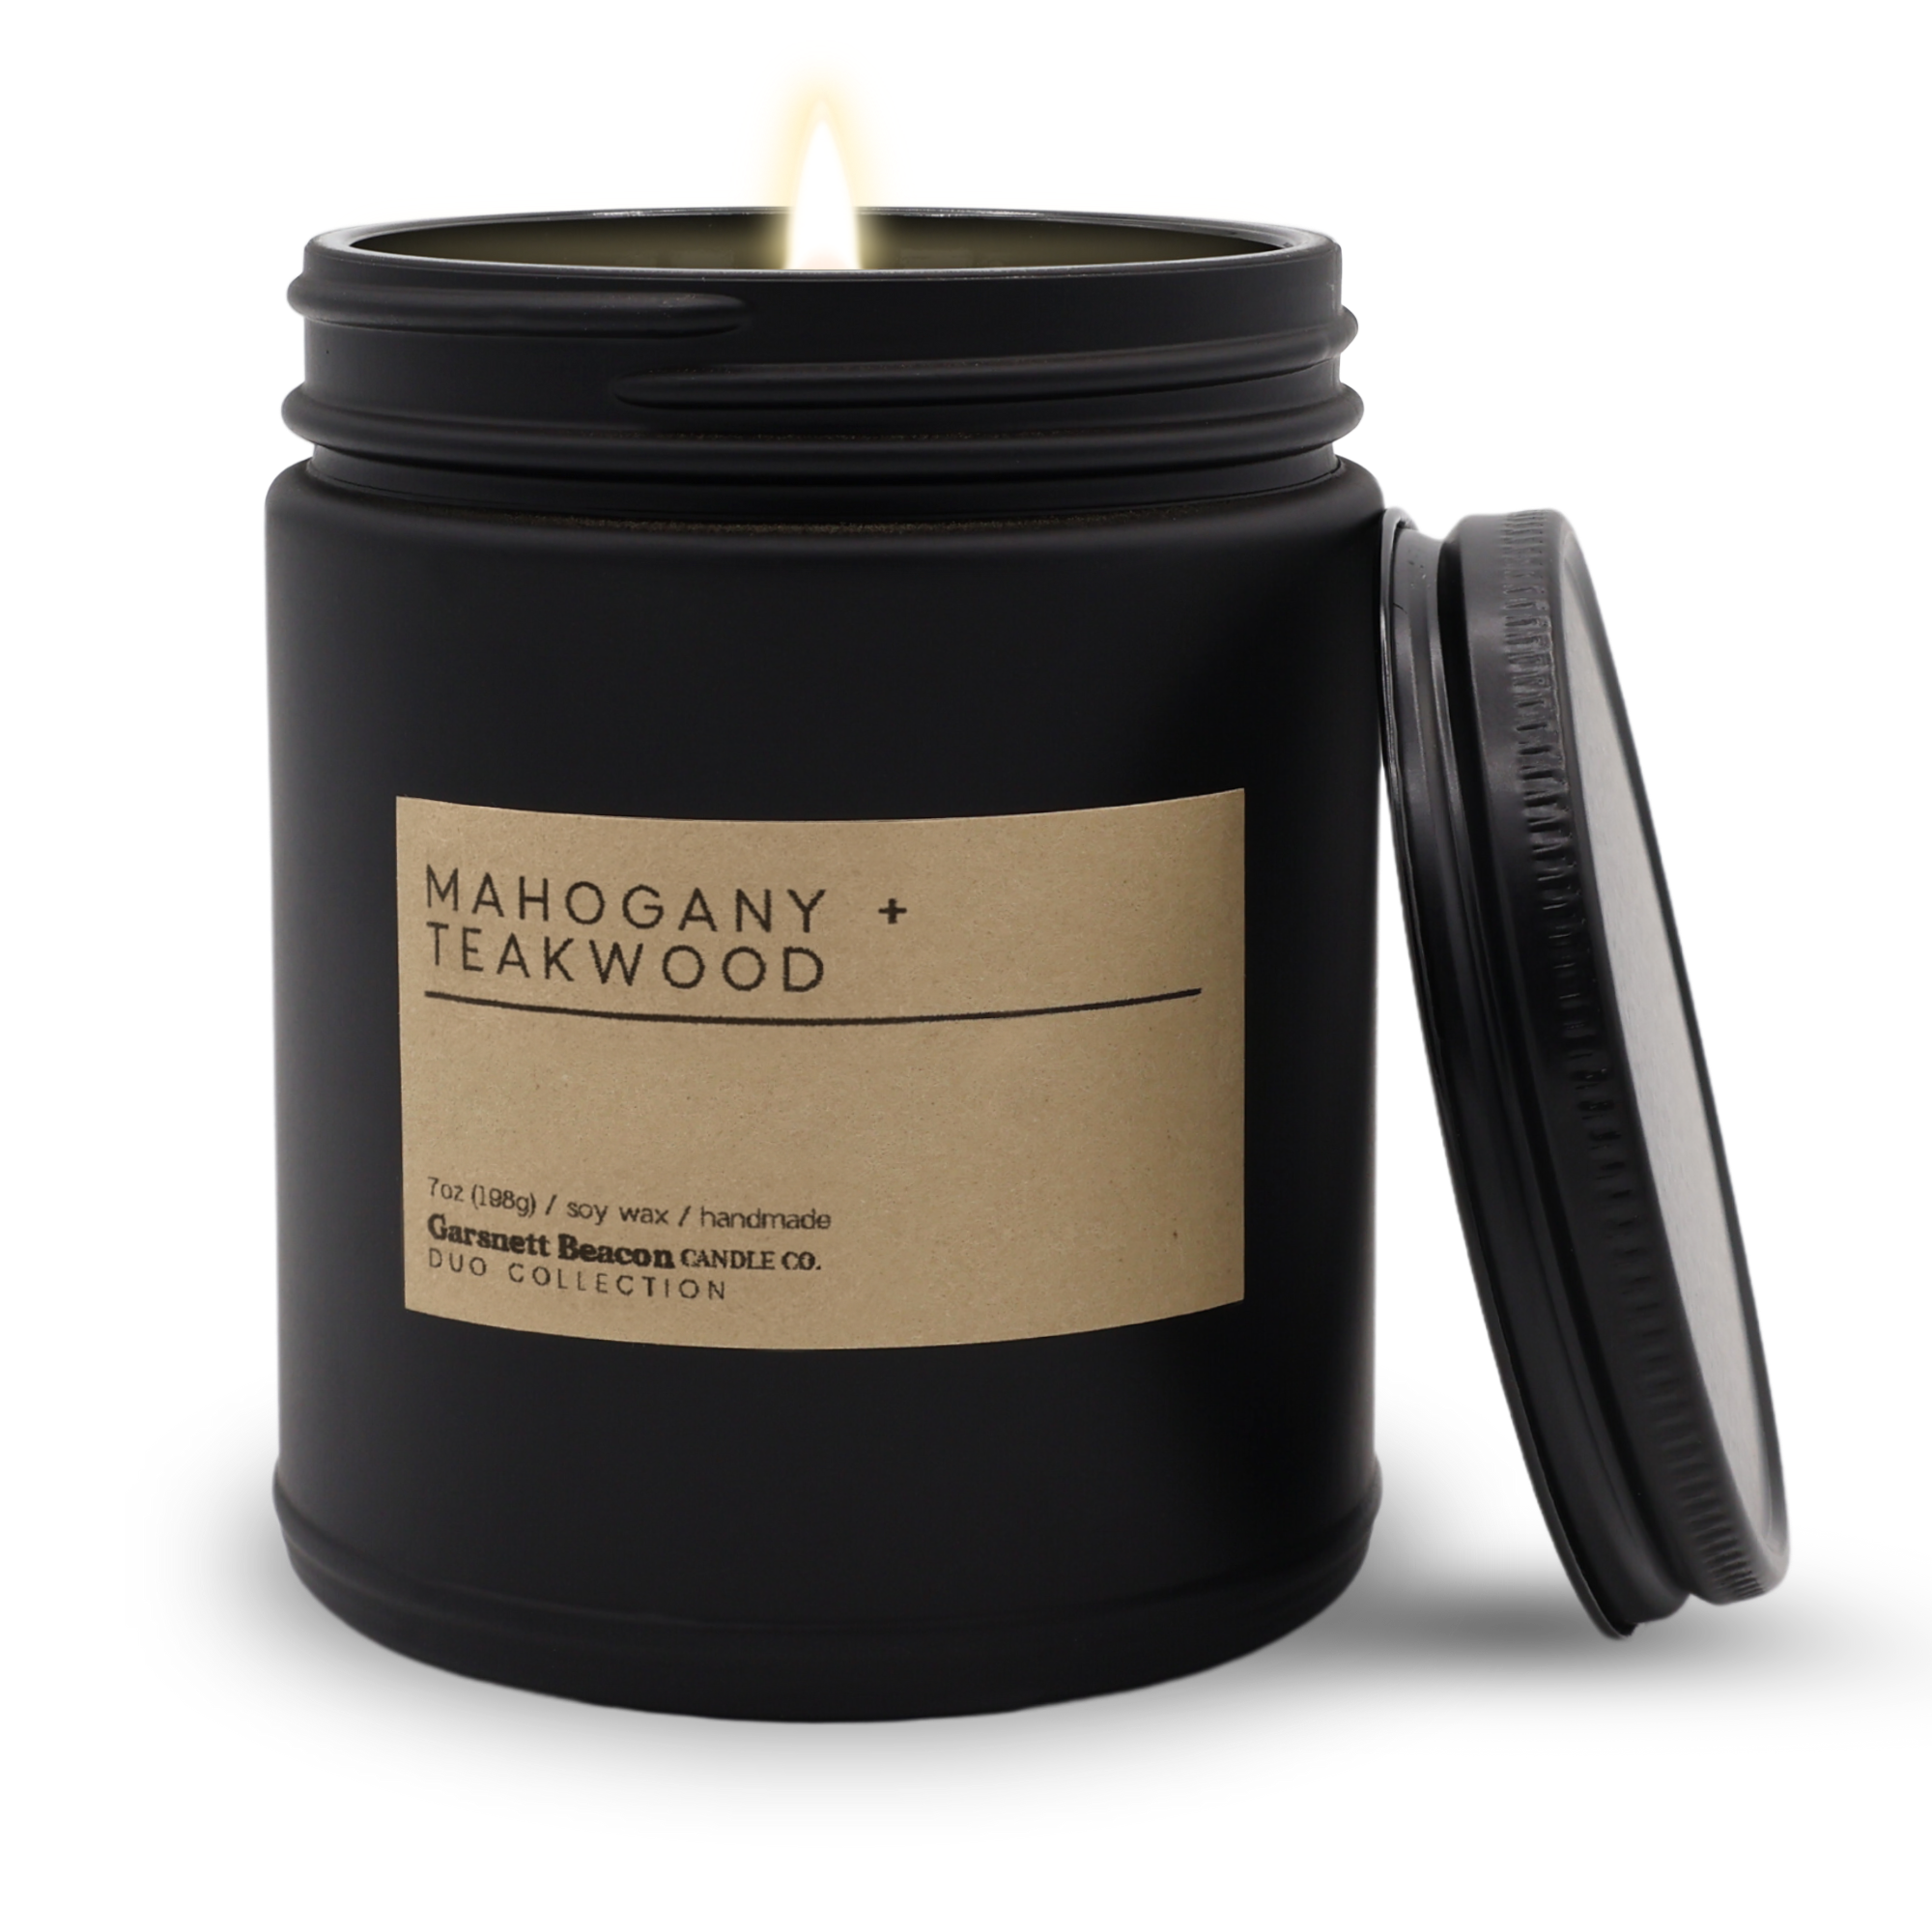 Mahogany + Teakwood Luxury Scented Candle 